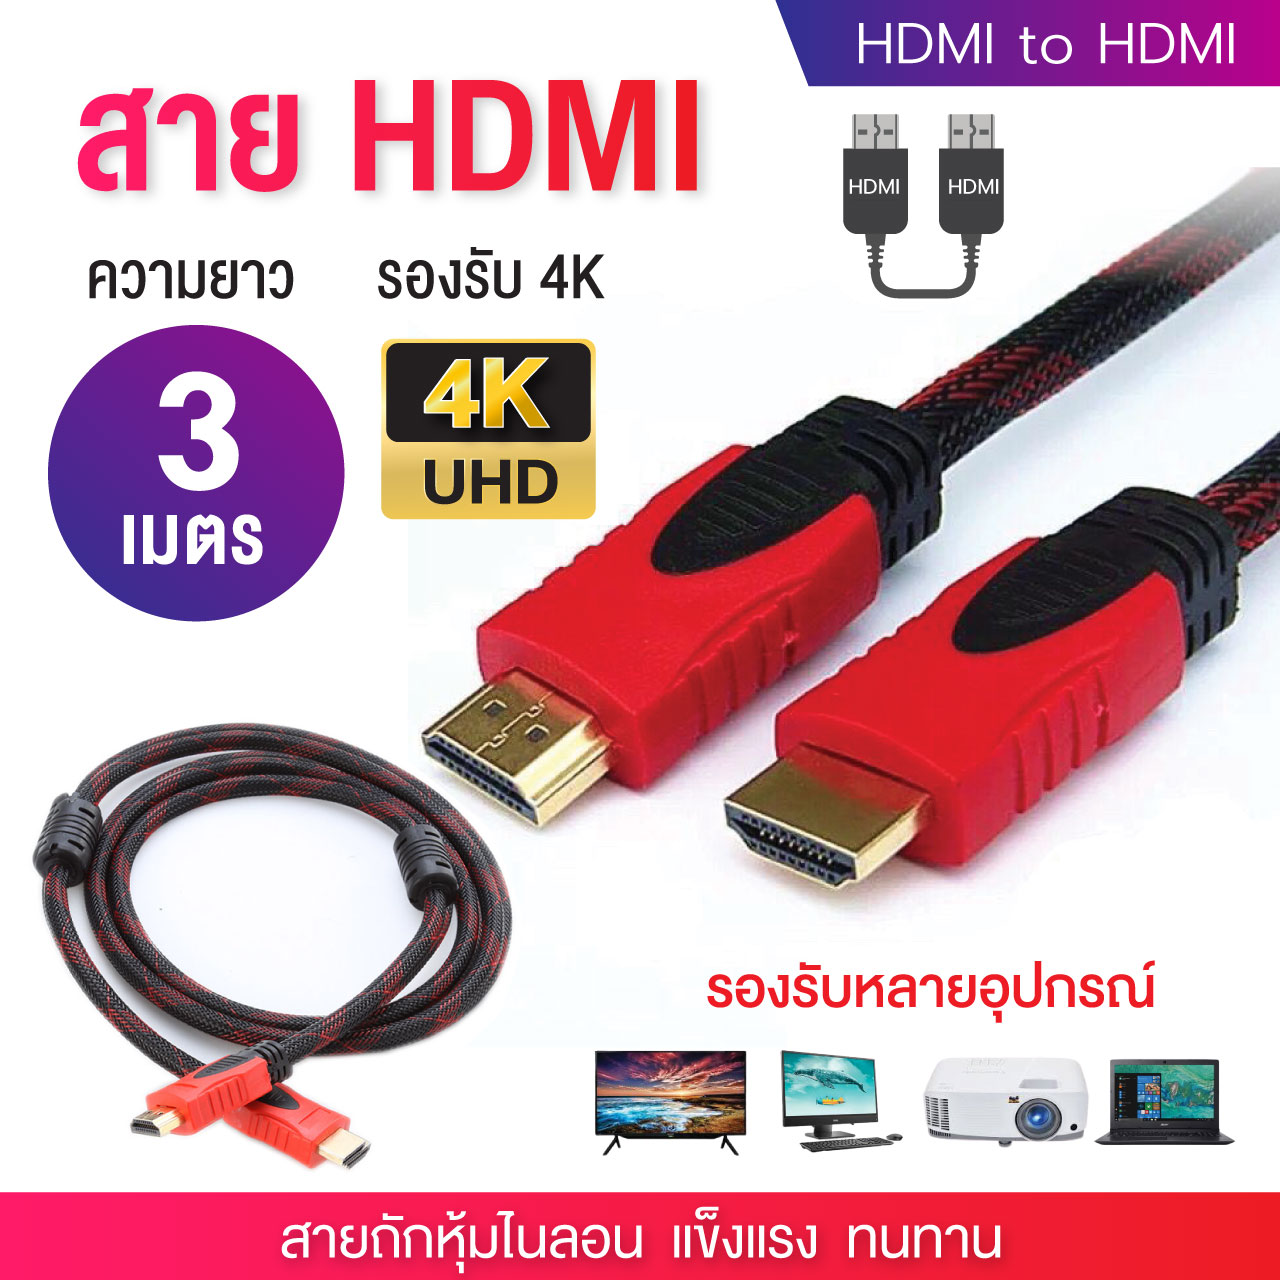 สายHDMI Cable 3m ยาว 5m 10m 15m ถักไนลอน รองรับทุกอุปกรณ์ ที่มีช่องเสียบ HDMI ความละเอียด 4K ส่งสัญญาณ ภาพ เสียง วิดิโอ PC Notebook Laptop